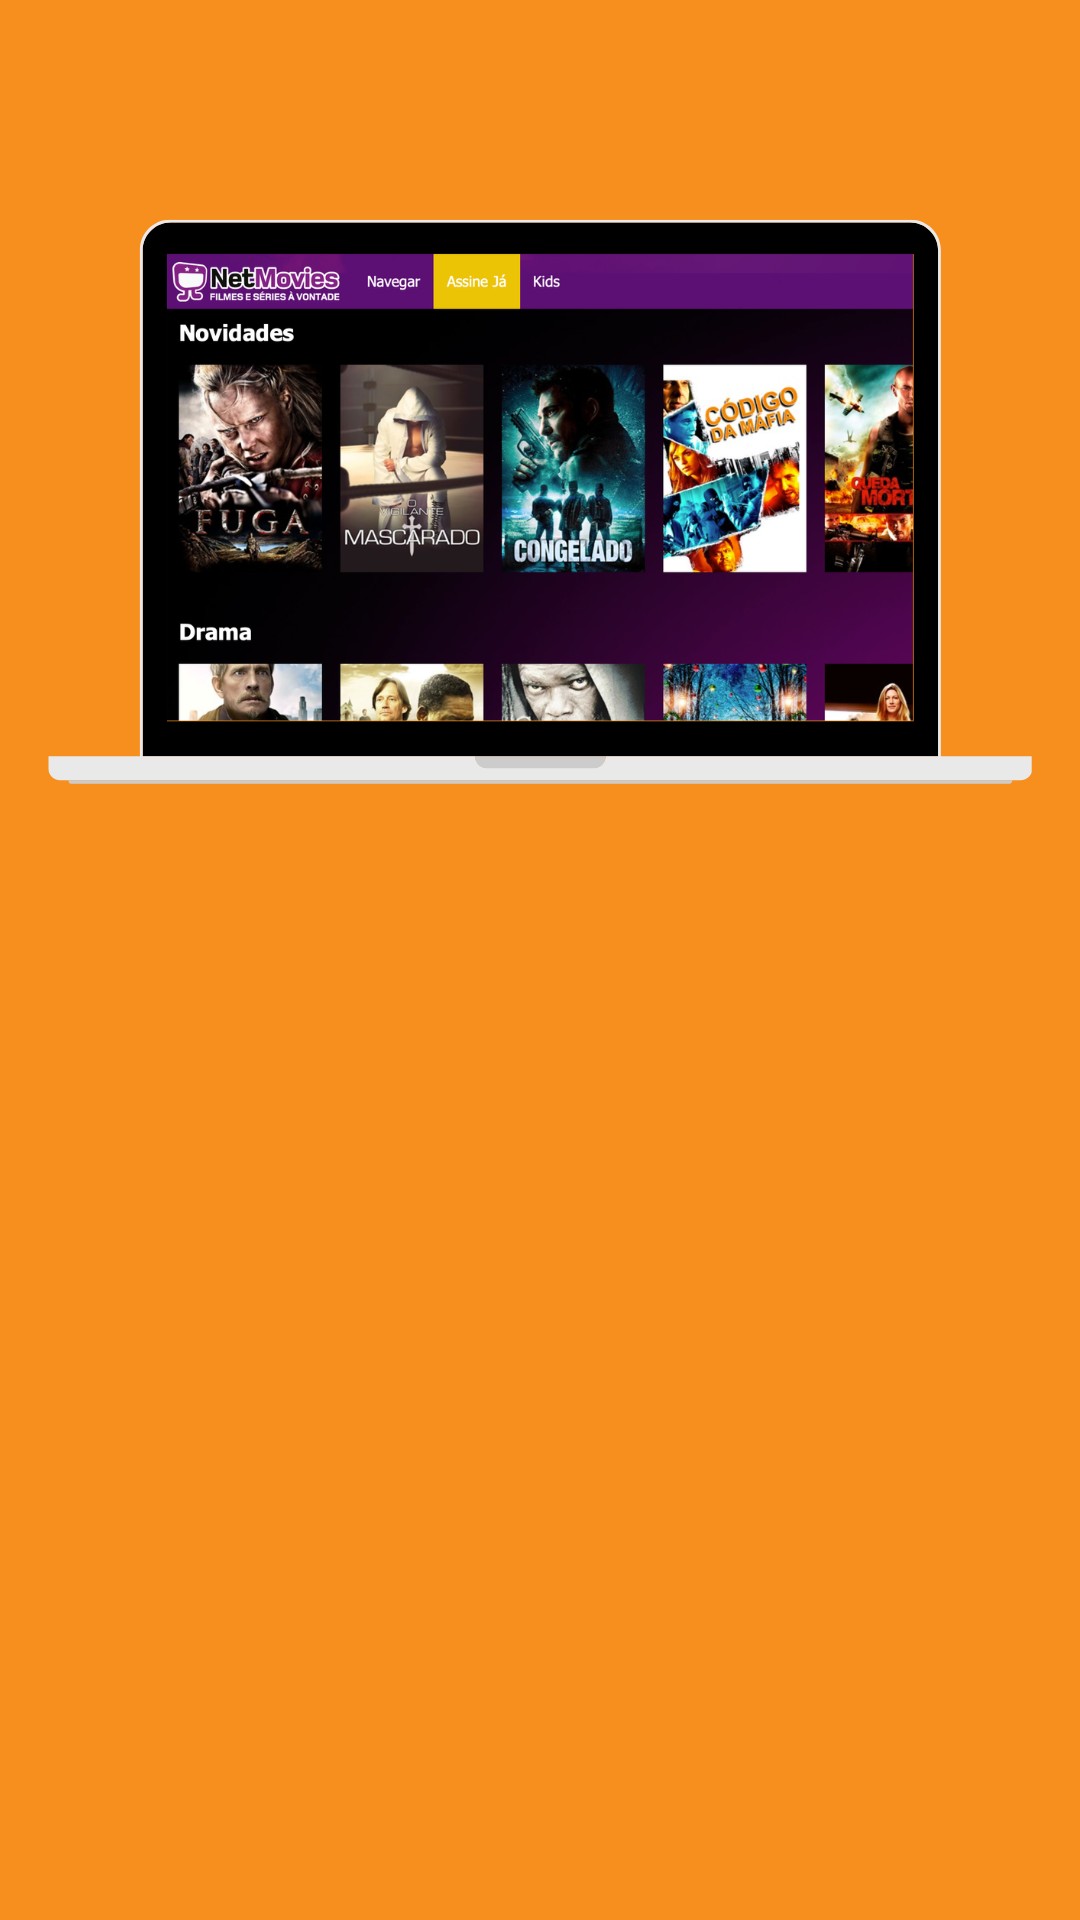 Nova plataforma pra assistir filmes e séries gratuitos 🚨🚨🚨 #dicadef